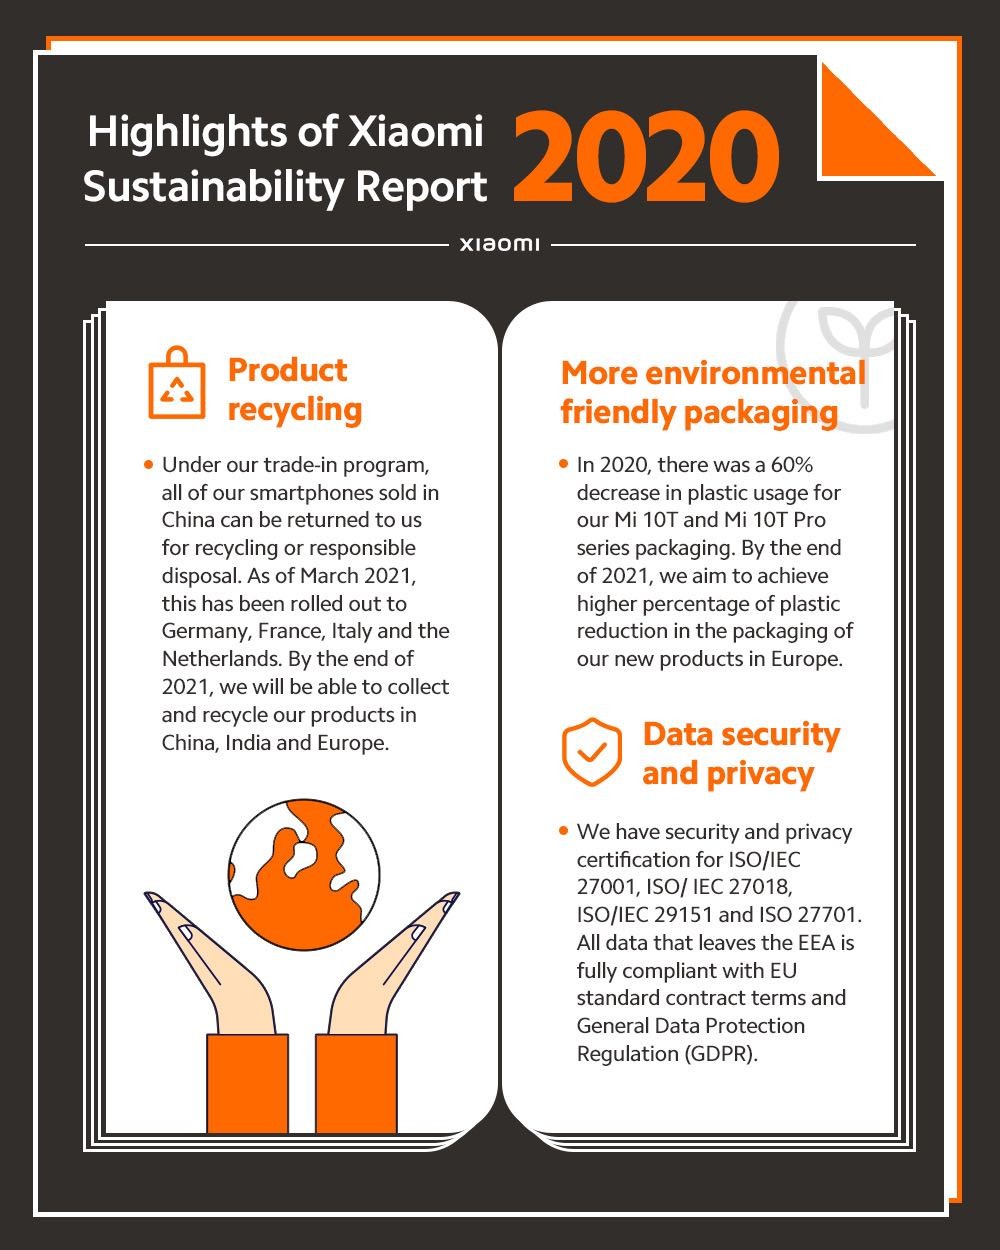  Xiaomi публикует свой отчет об устойчивом развитии за 2020 год, в котором говорится о сокращении отходов и борьбе с COVID-19 